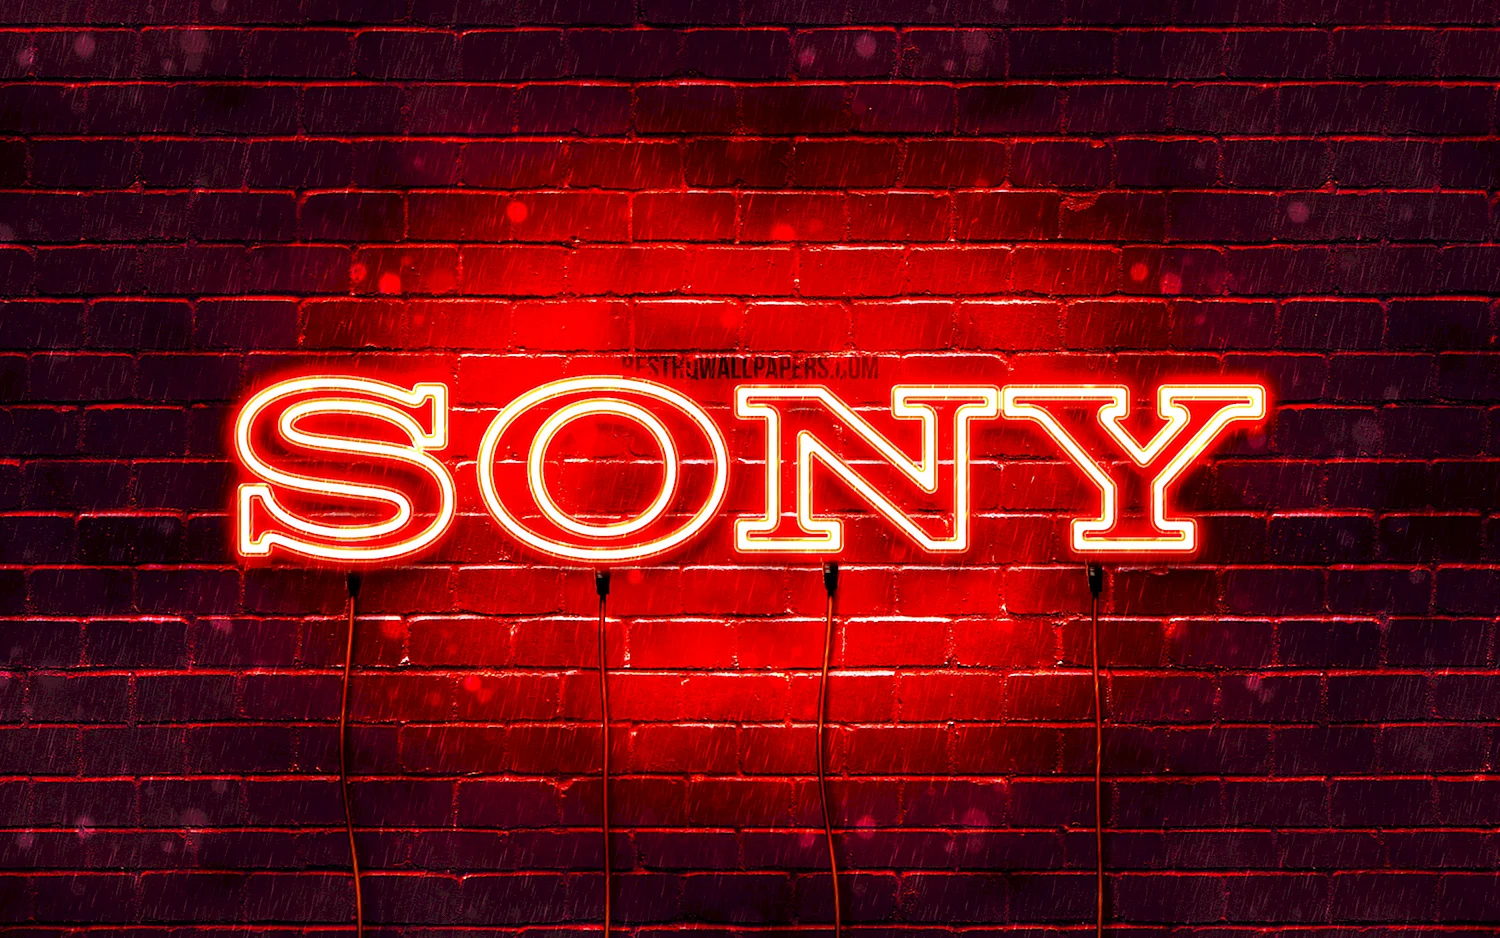 Sony надпись